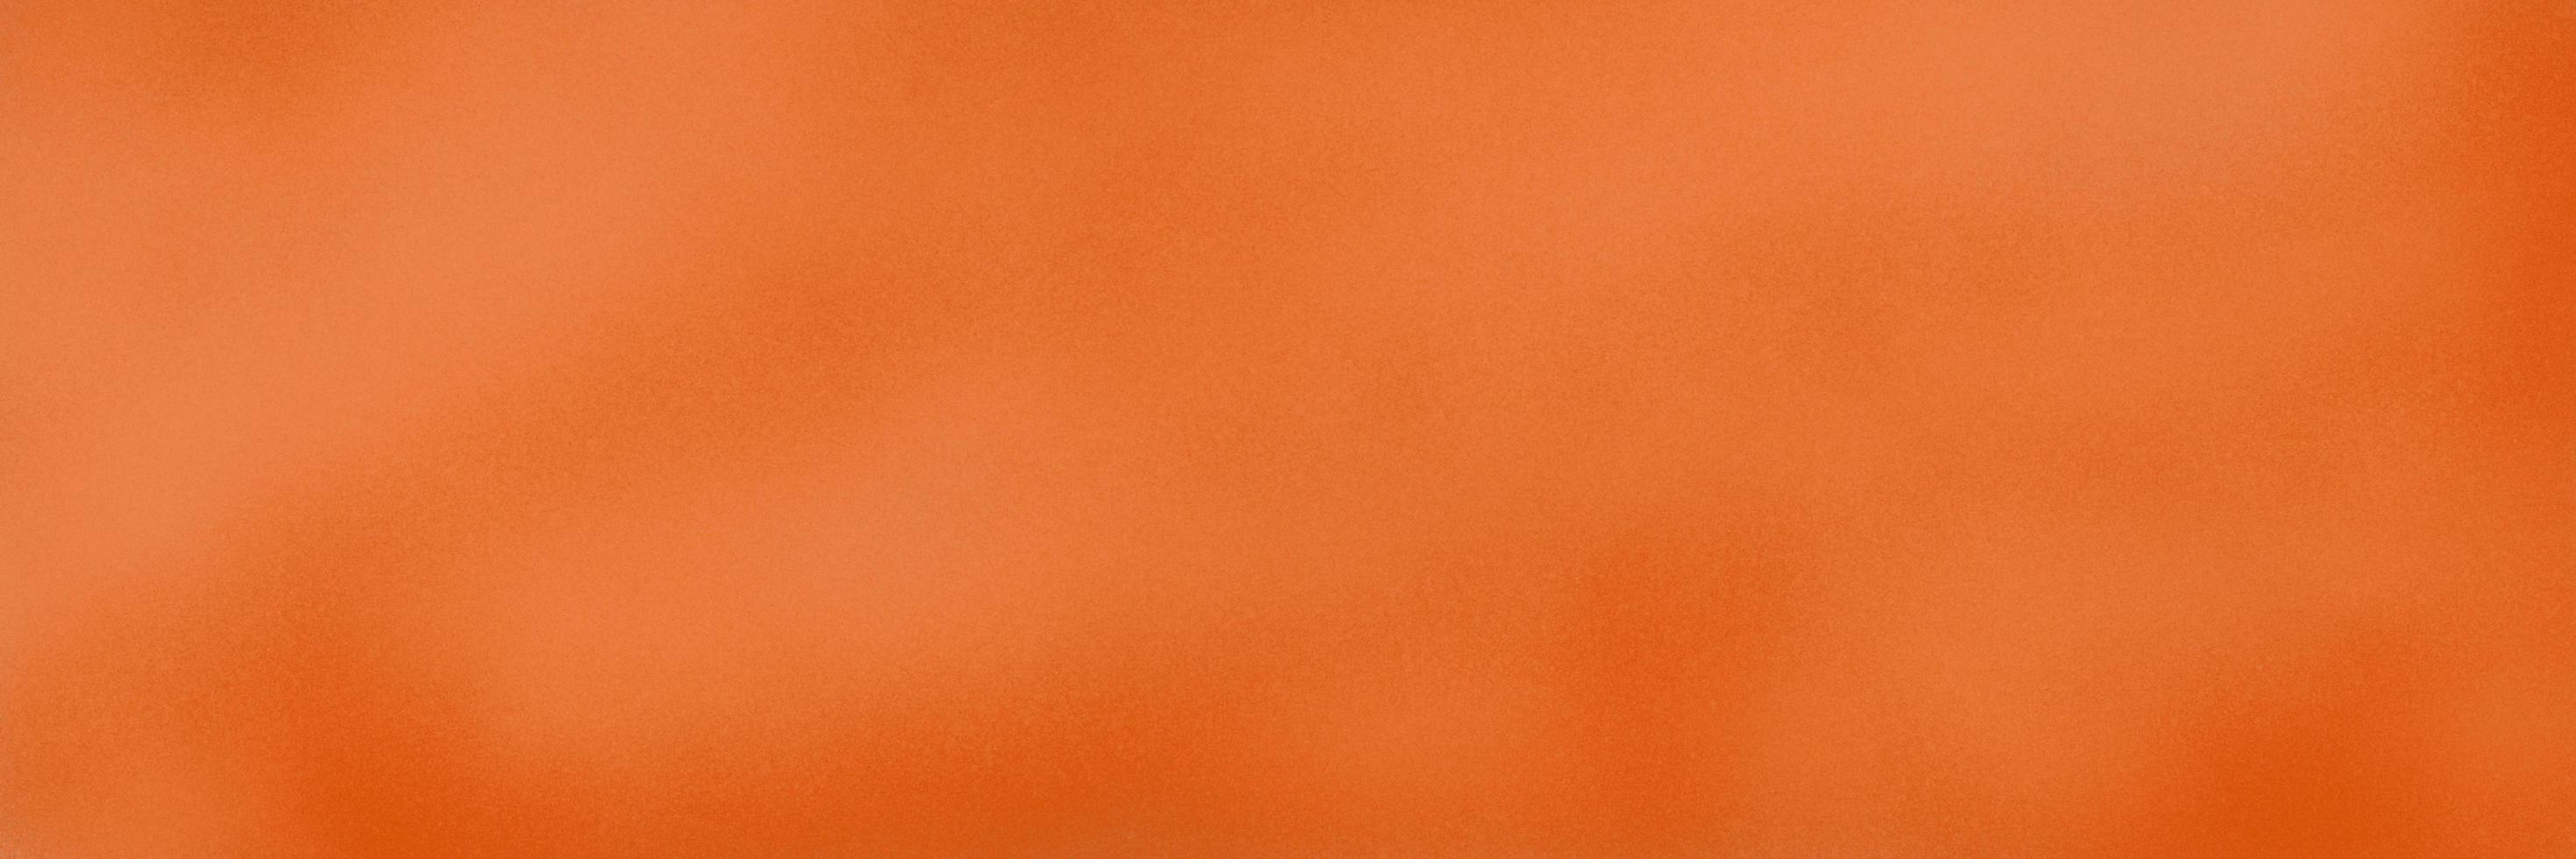 color naranja estampado sobre fondo degradado de papel blanco por computadora del programa, ilustraciones de textura áspera de arte abstracto. artes contemporáneas, lienzo de papel artístico monótono, postal de escritura espacial 2500x7500 foto